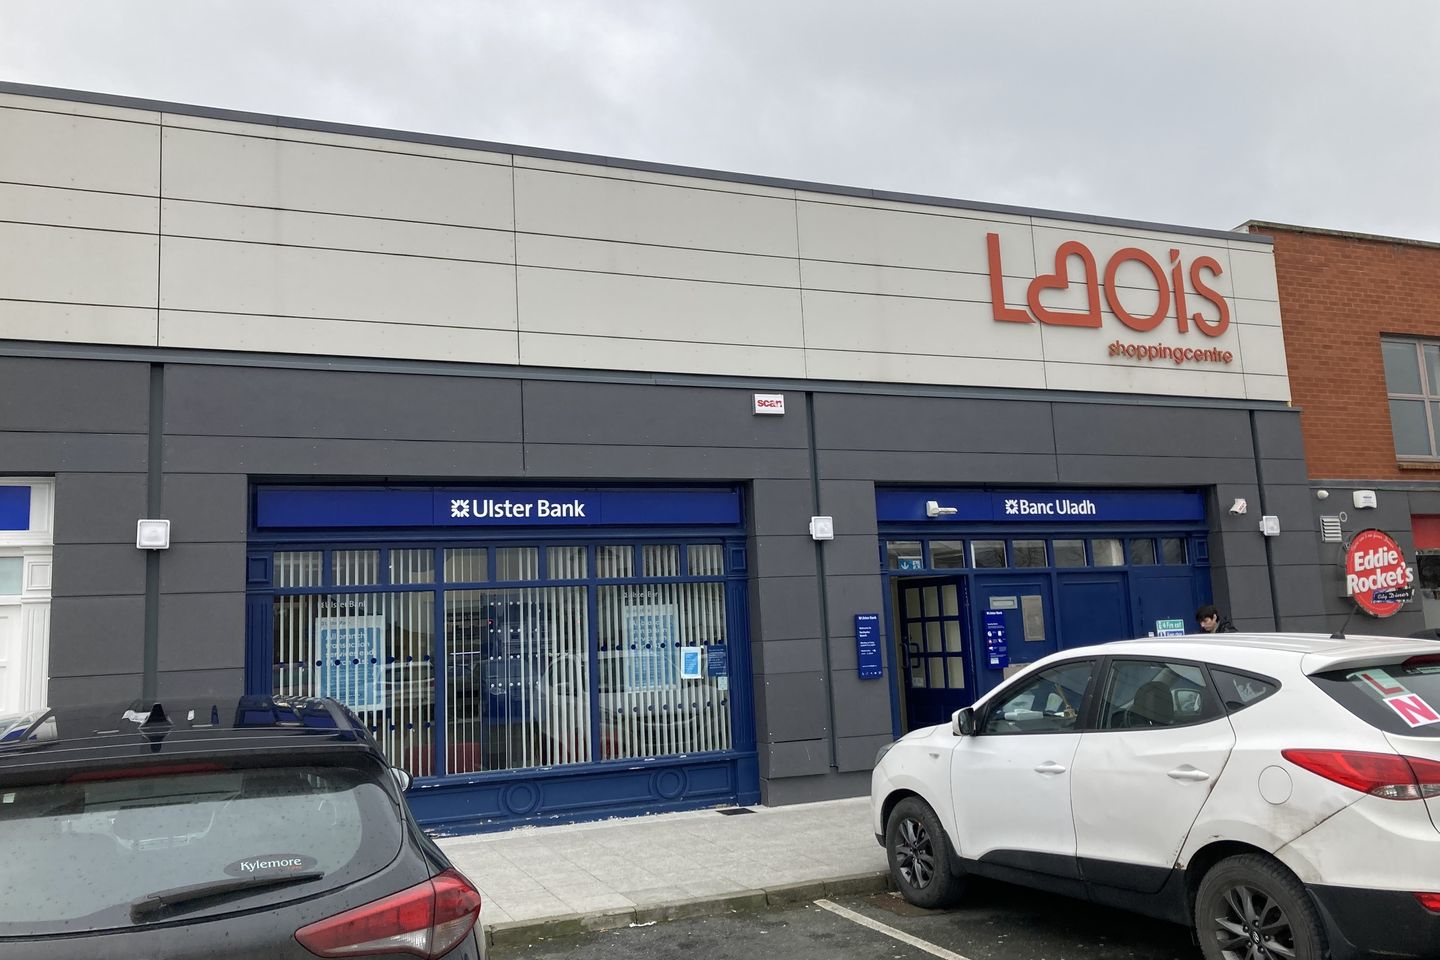 Laois Shopping Centre, Portlaoise, Co. Laois